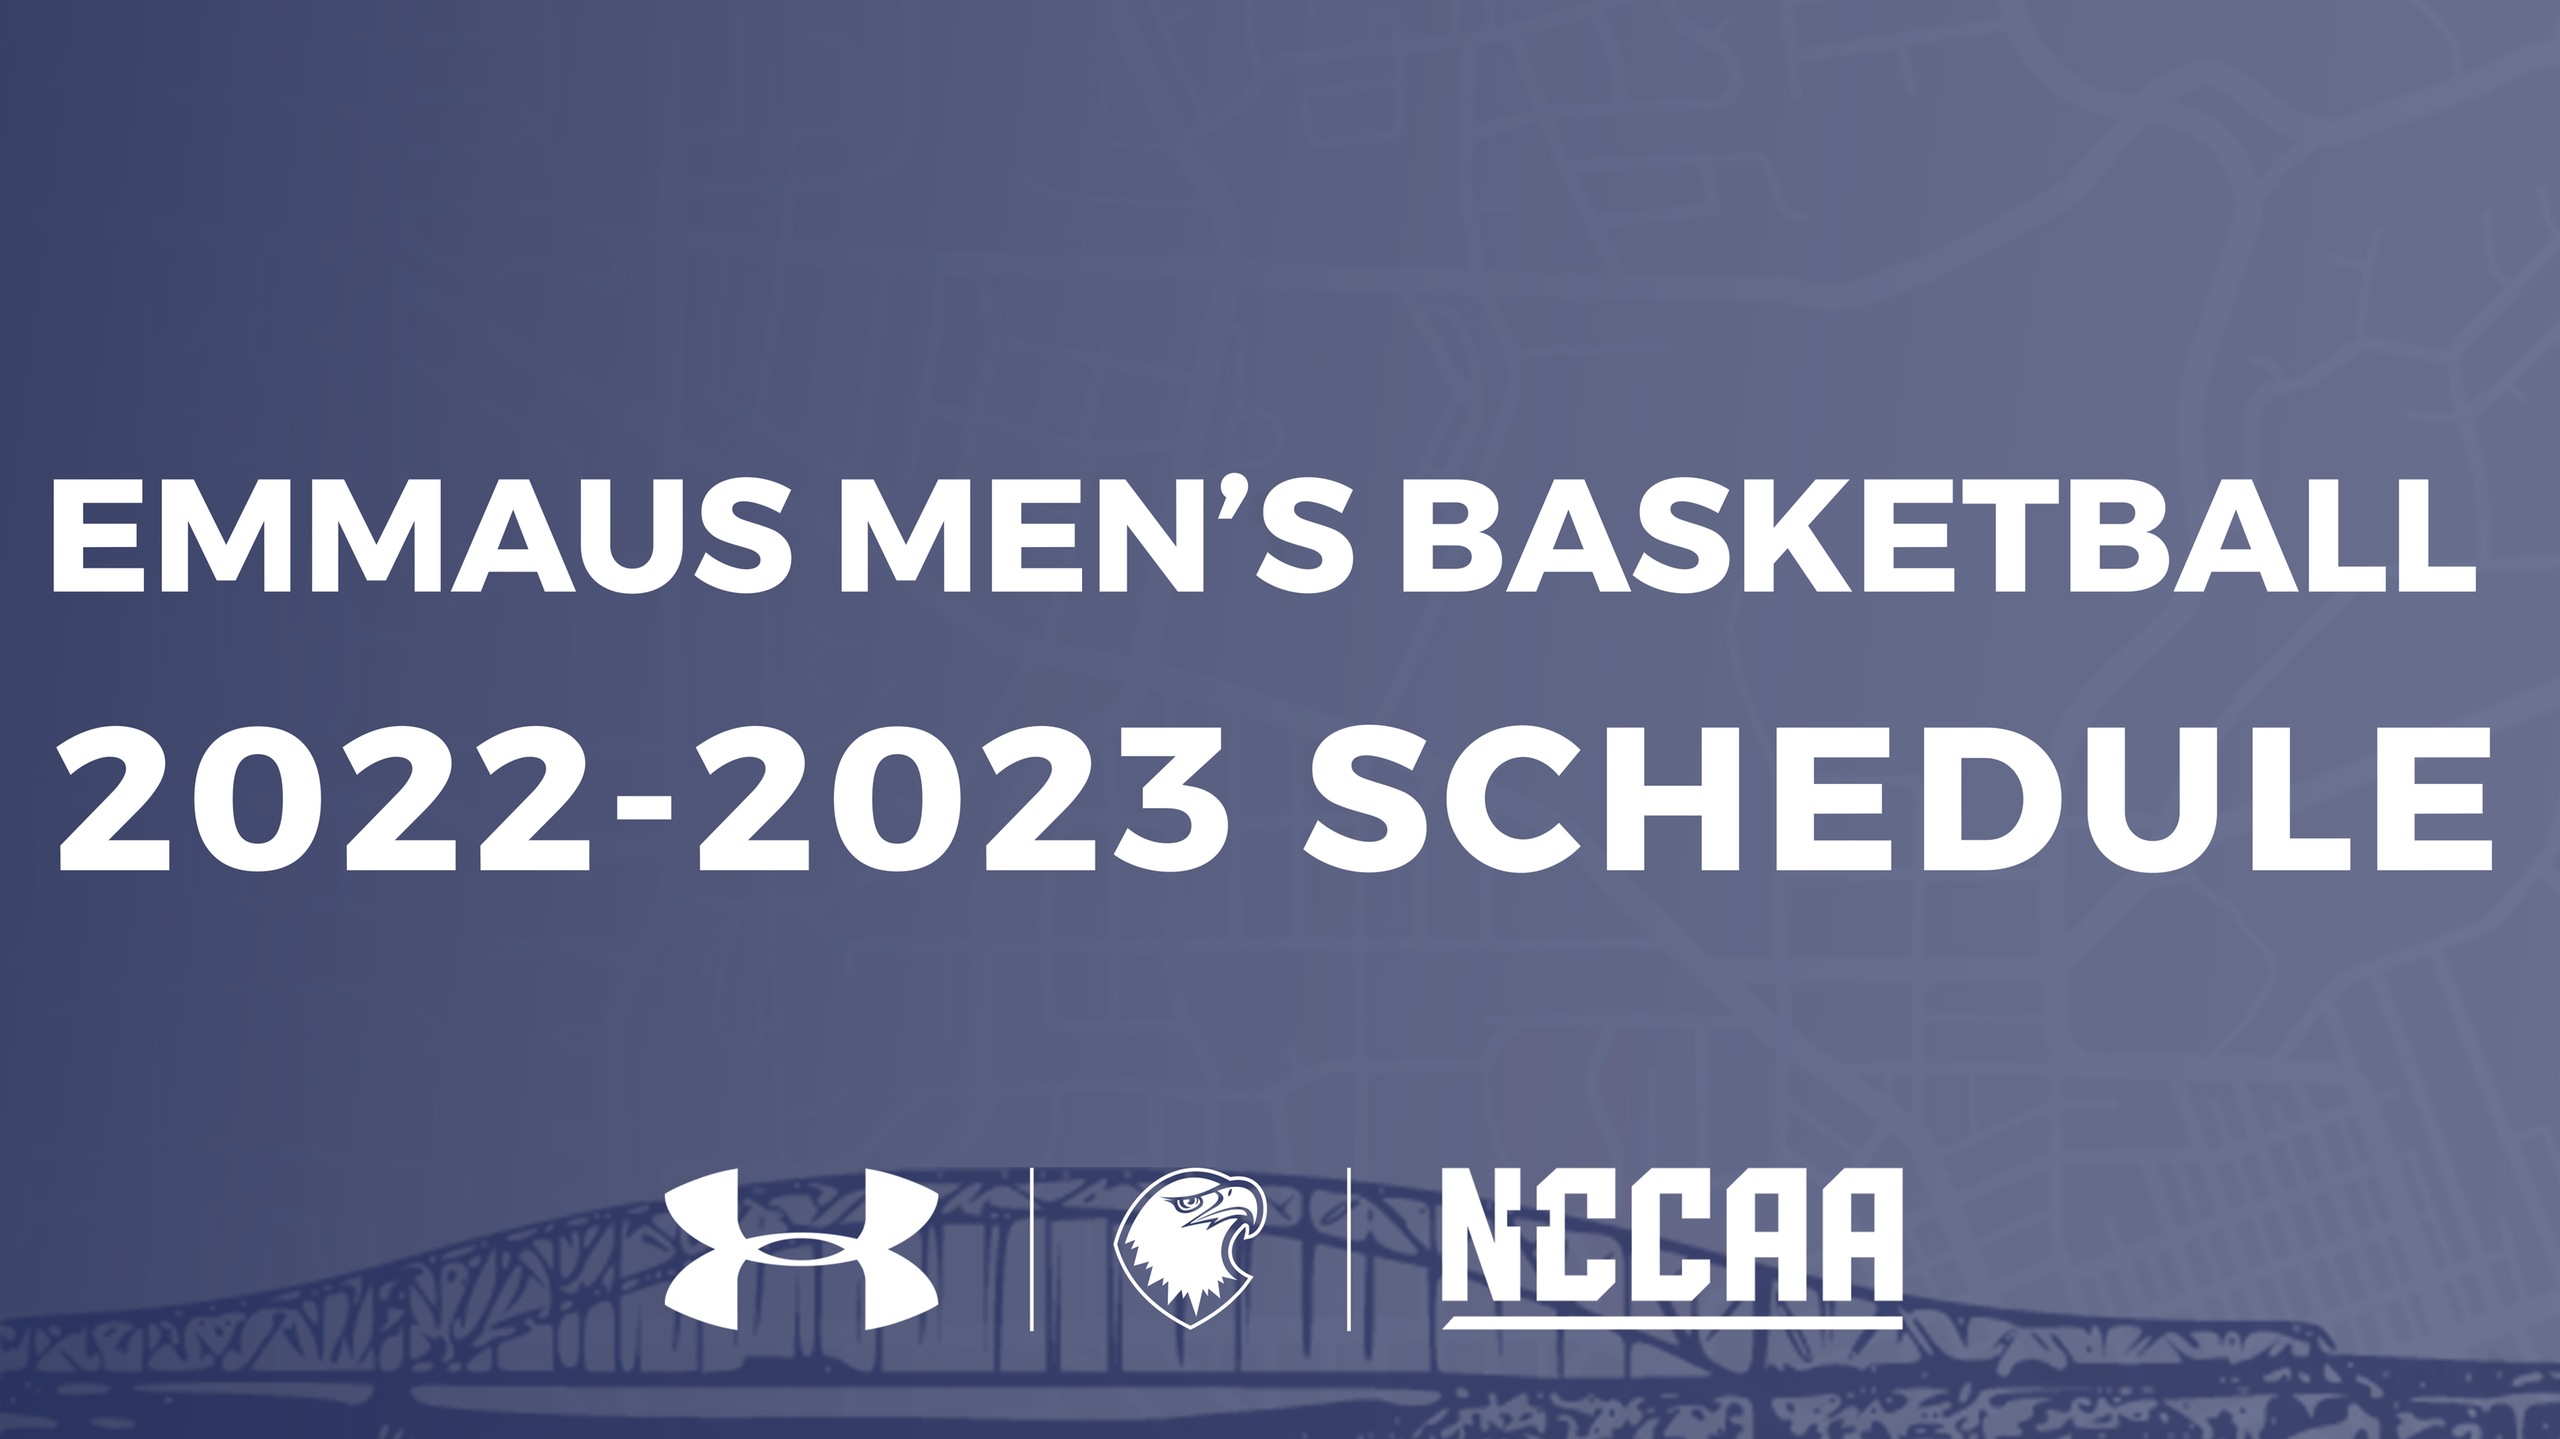 Men's Basketball Schedule Announced for 2022-23 Season